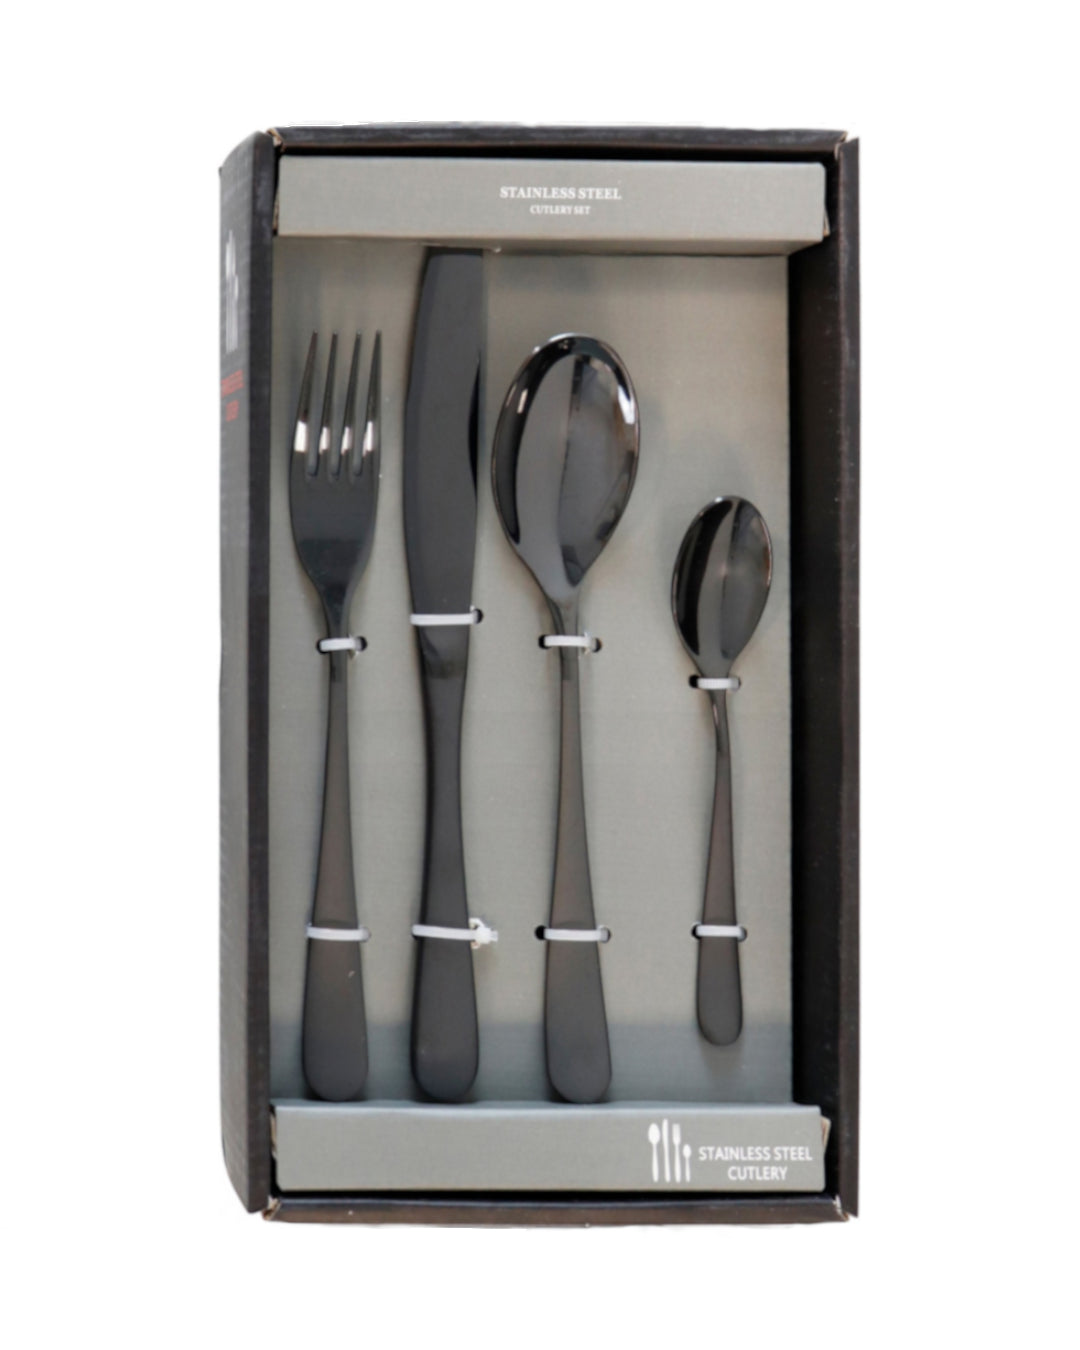 Steel cutlery set x6